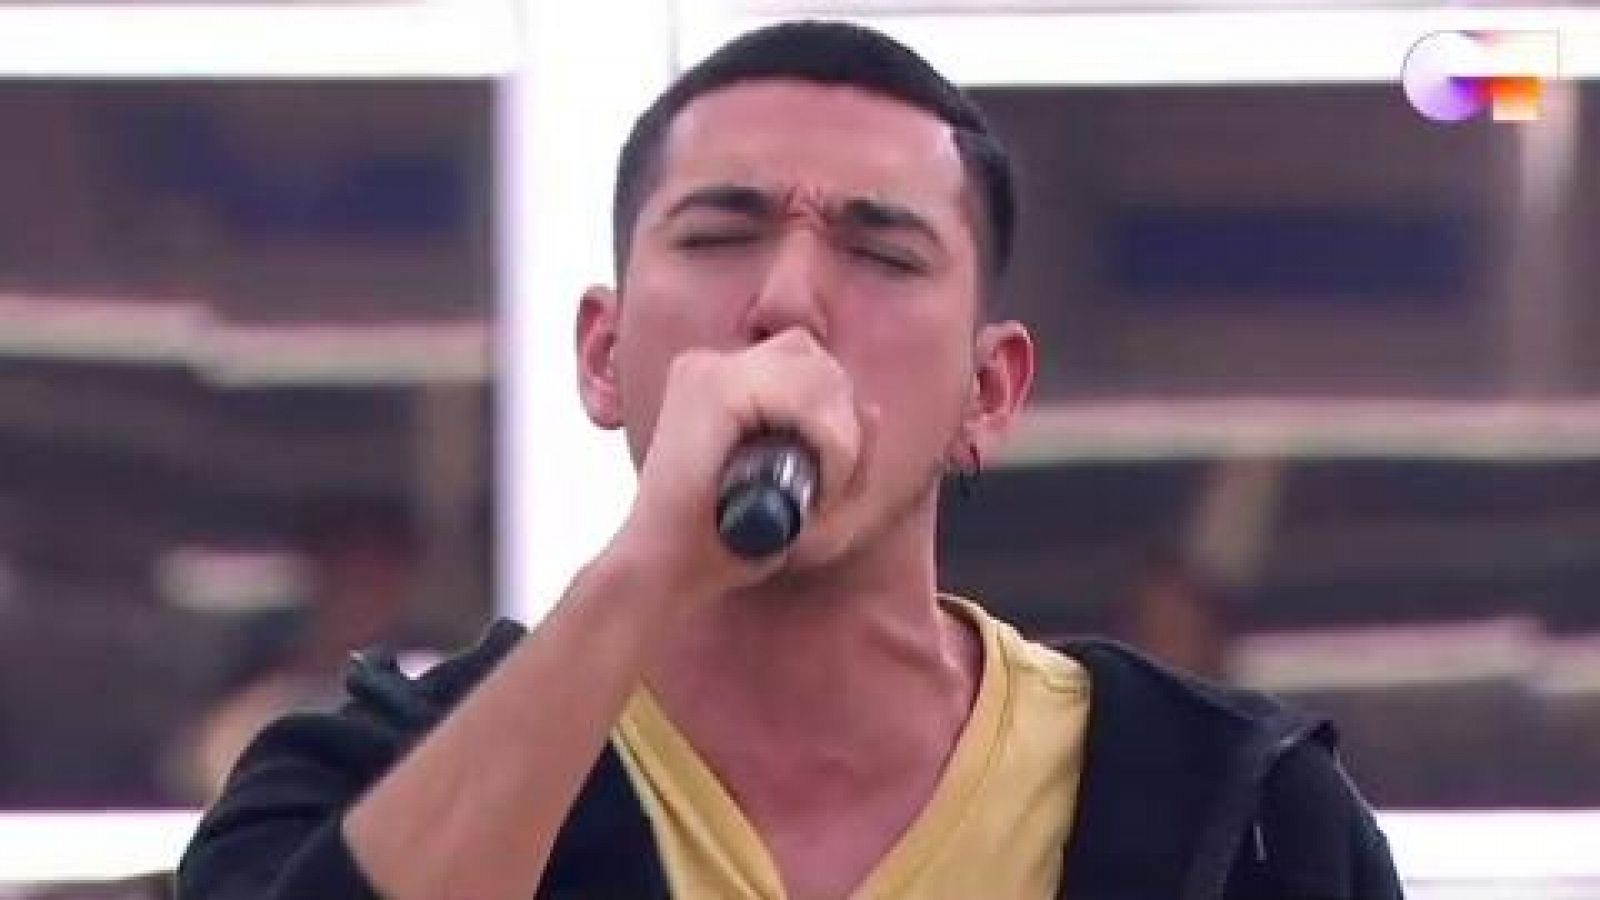 Bruno canta "Fugitivos", de Bruno Carrasco, en el segundo pase de micros de la Gala 11 de Operación Triunfo 2020